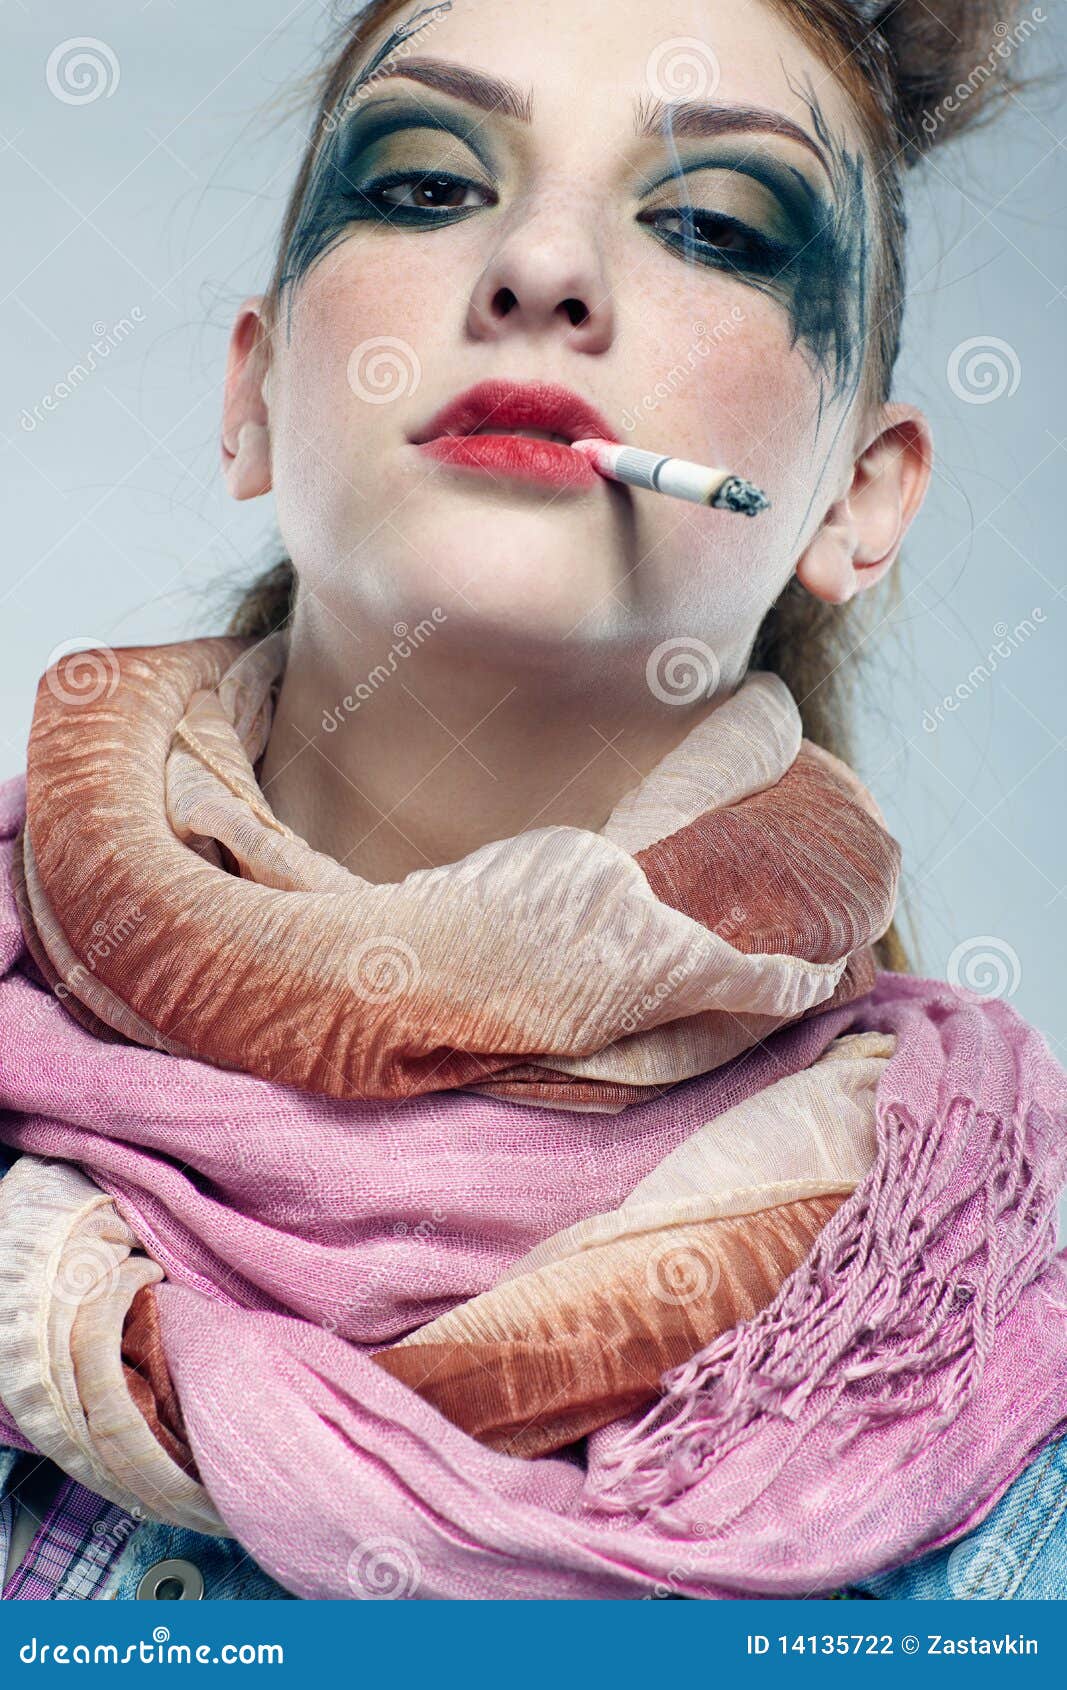 壁纸 : Shadbase, 抽烟, 耳机, 香烟, 晚, 市, 妇女, 艺术品, 哭泣, 眼泪, Doomer Girl, shadman ...